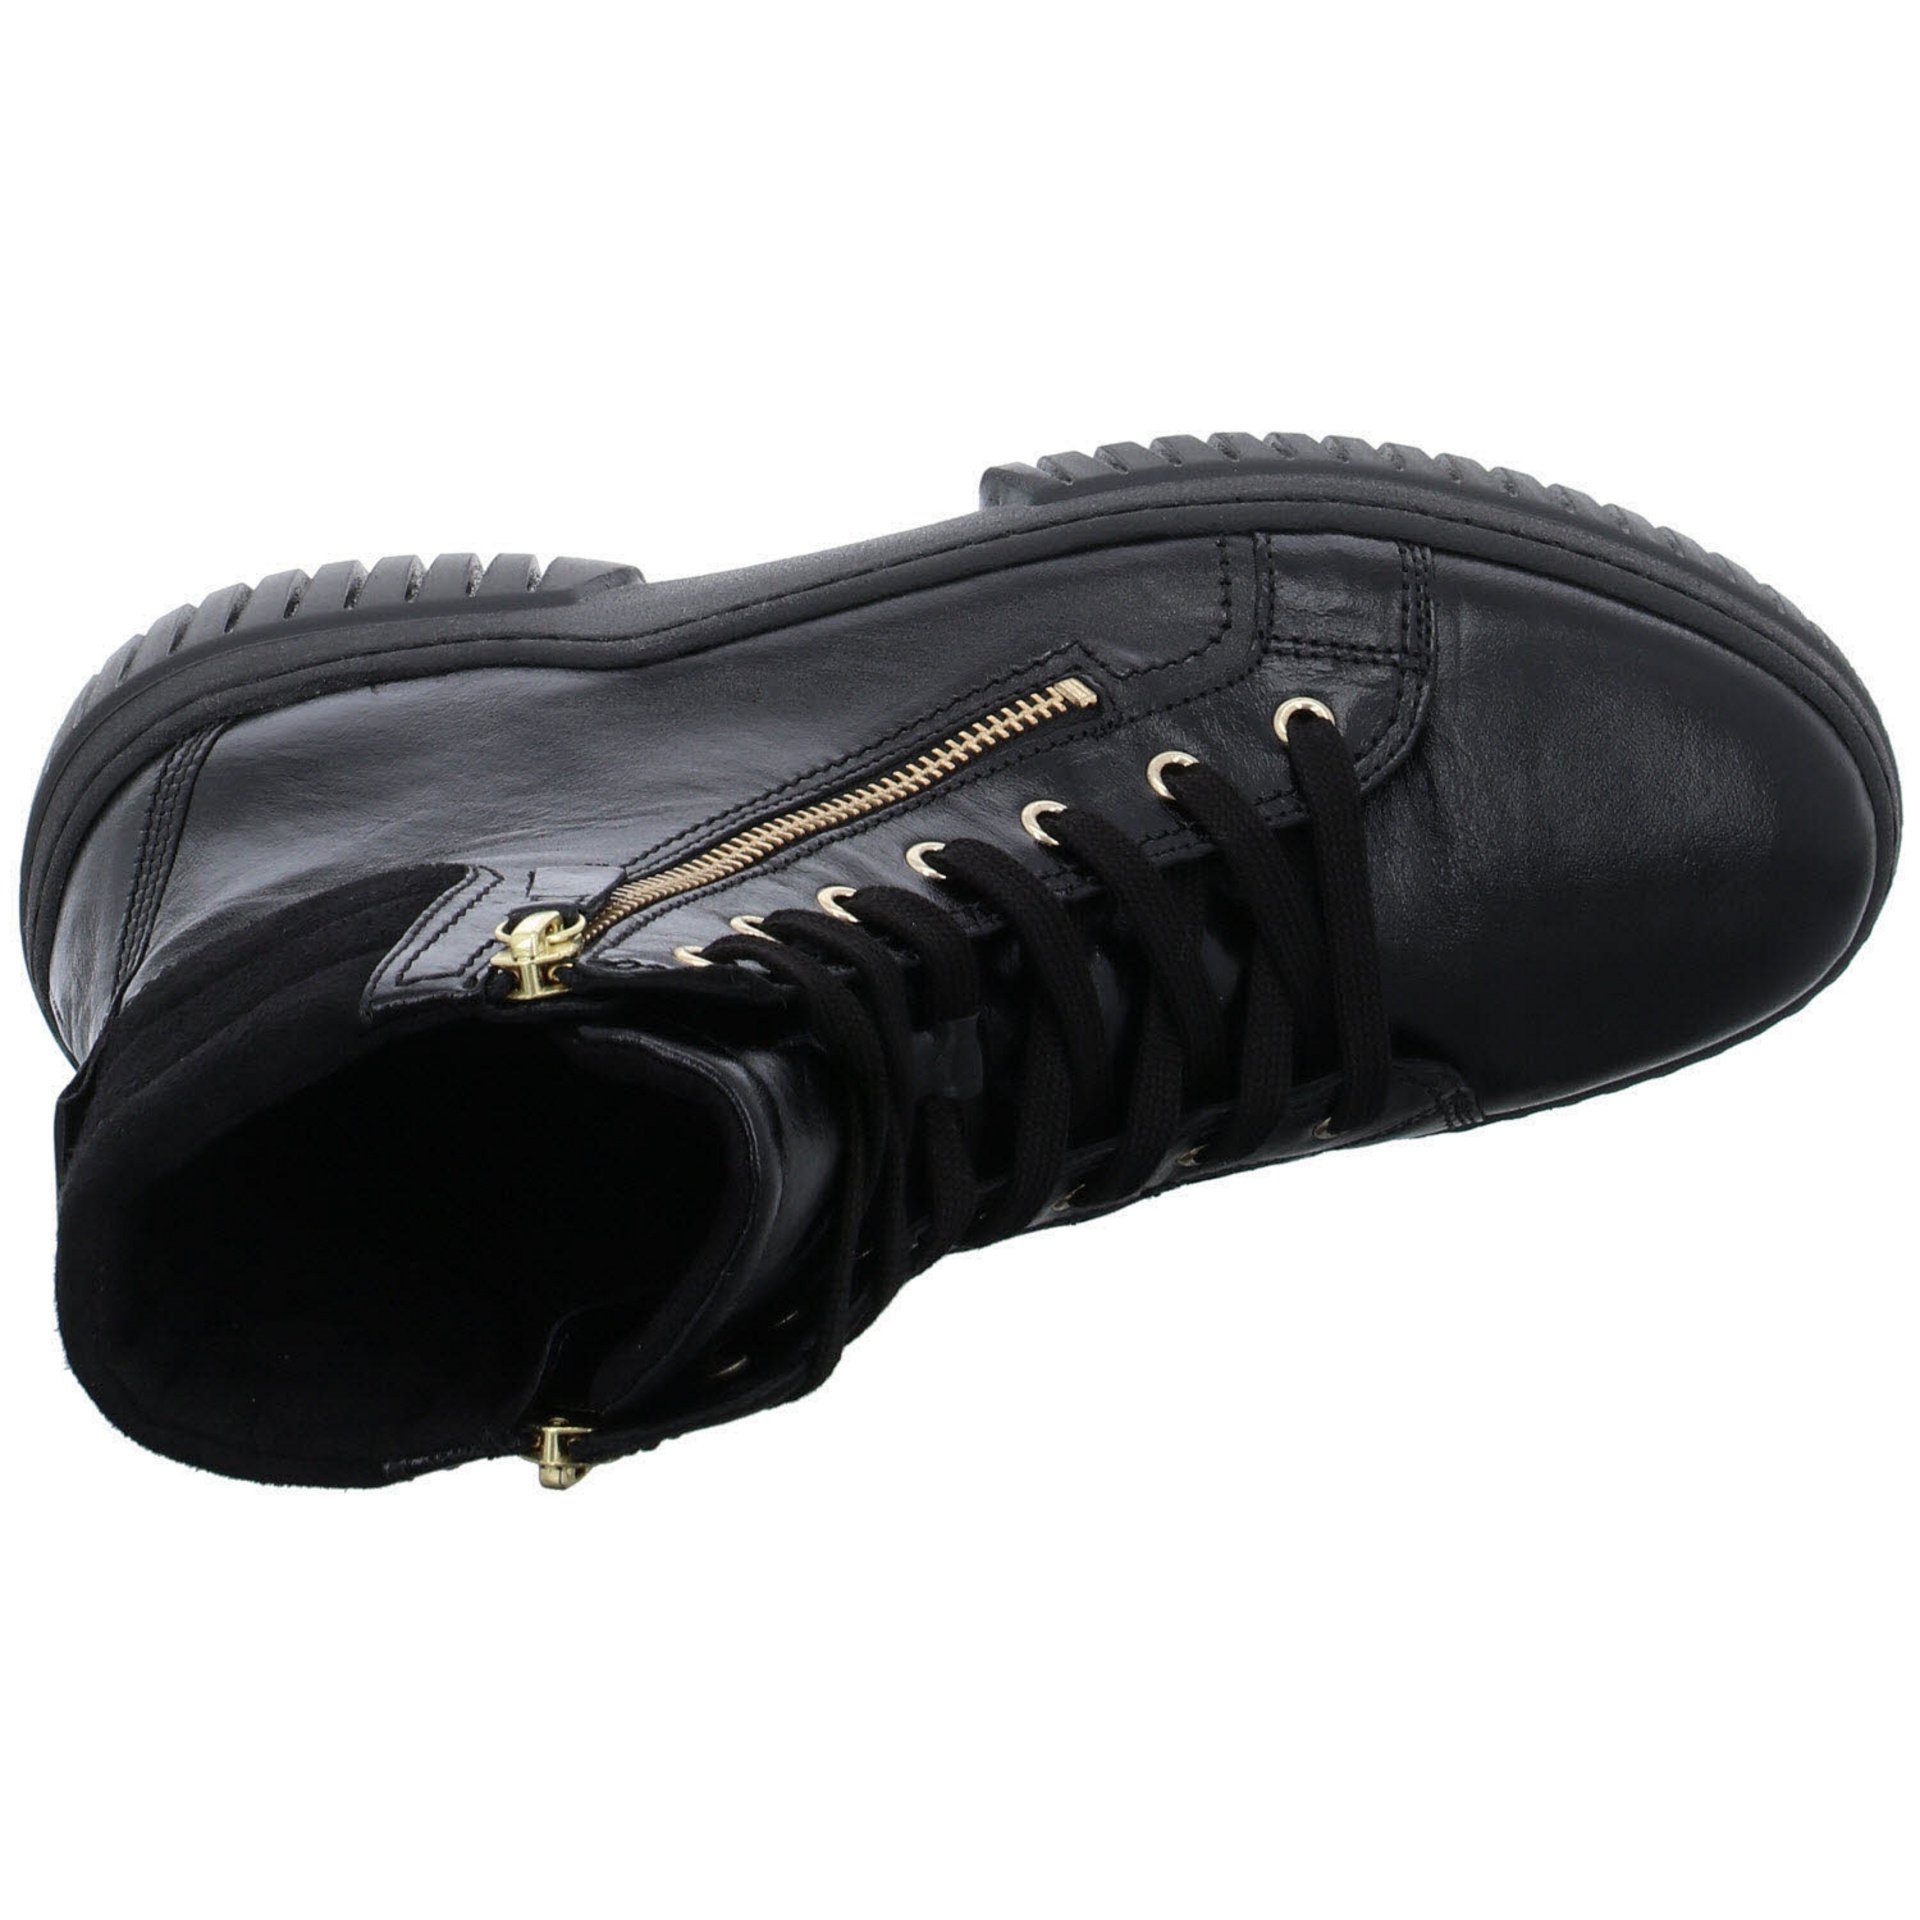 Schuhe Gabor Glattleder schwarz Damen Freizeit Boots (gold) Elegant Schnürstiefel Stiefeletten